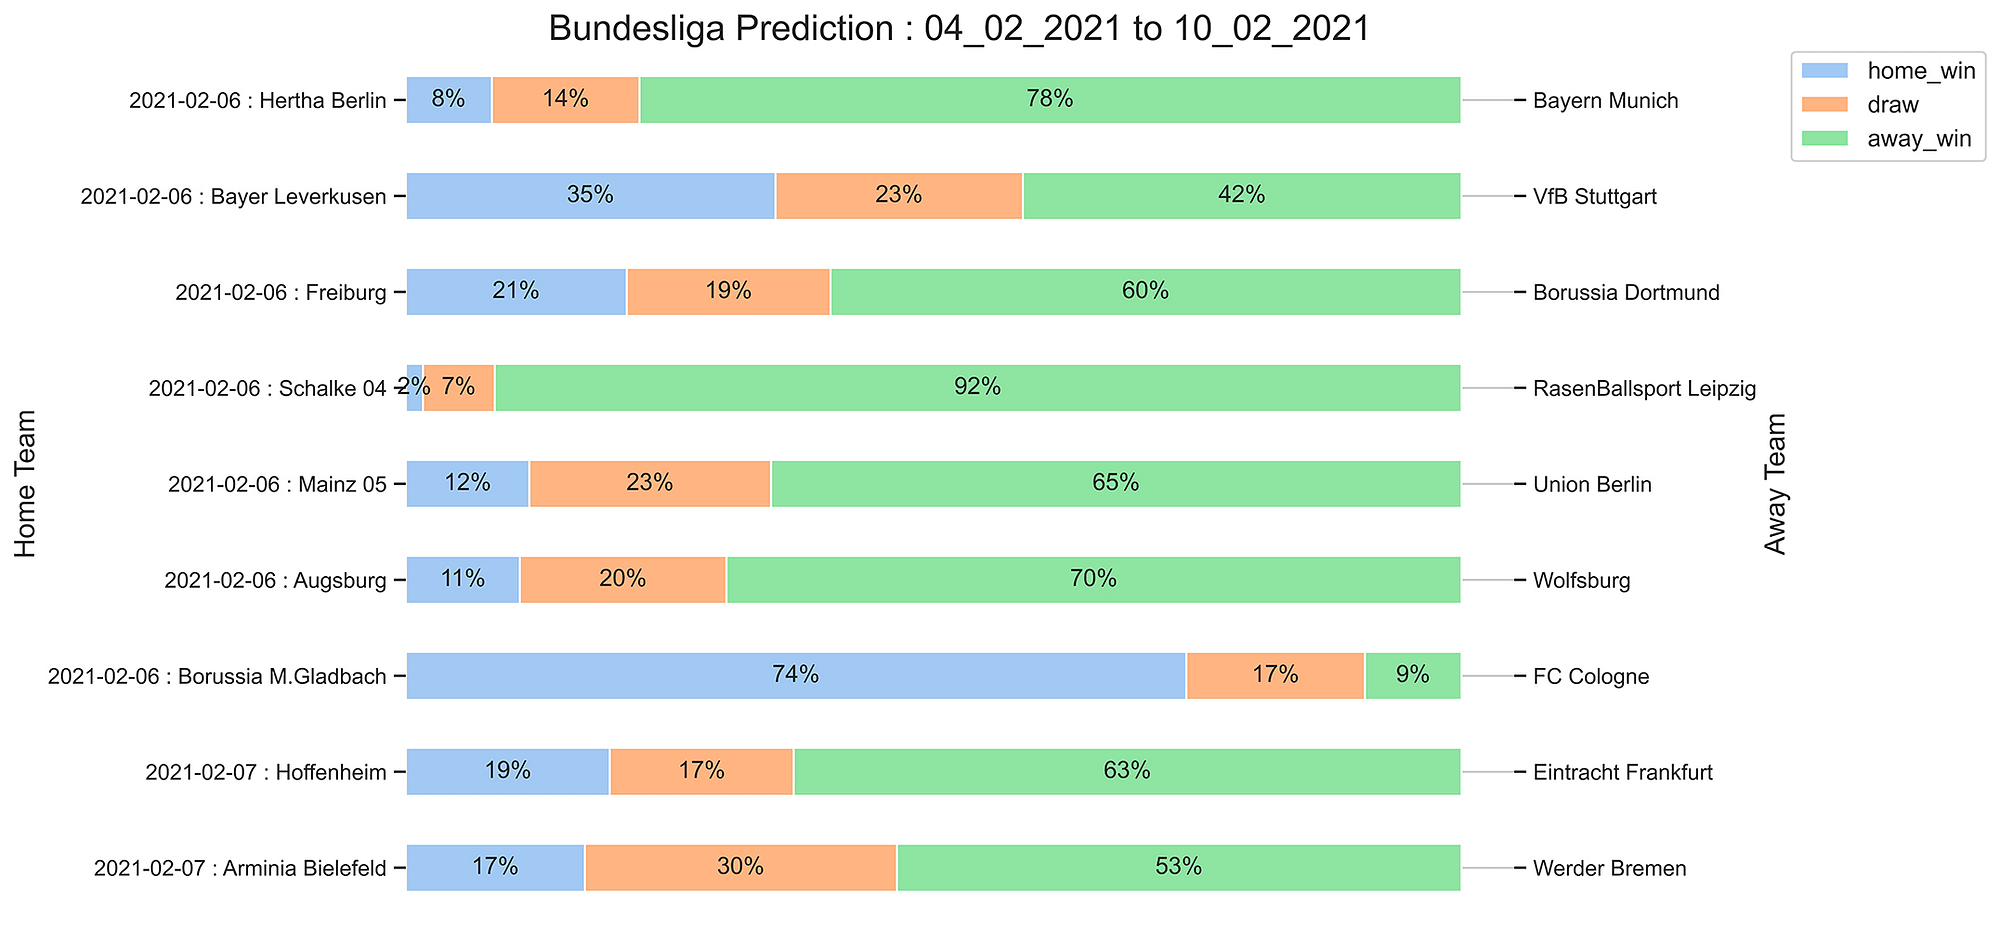 Bundesliga_Prediction 04_02_2021